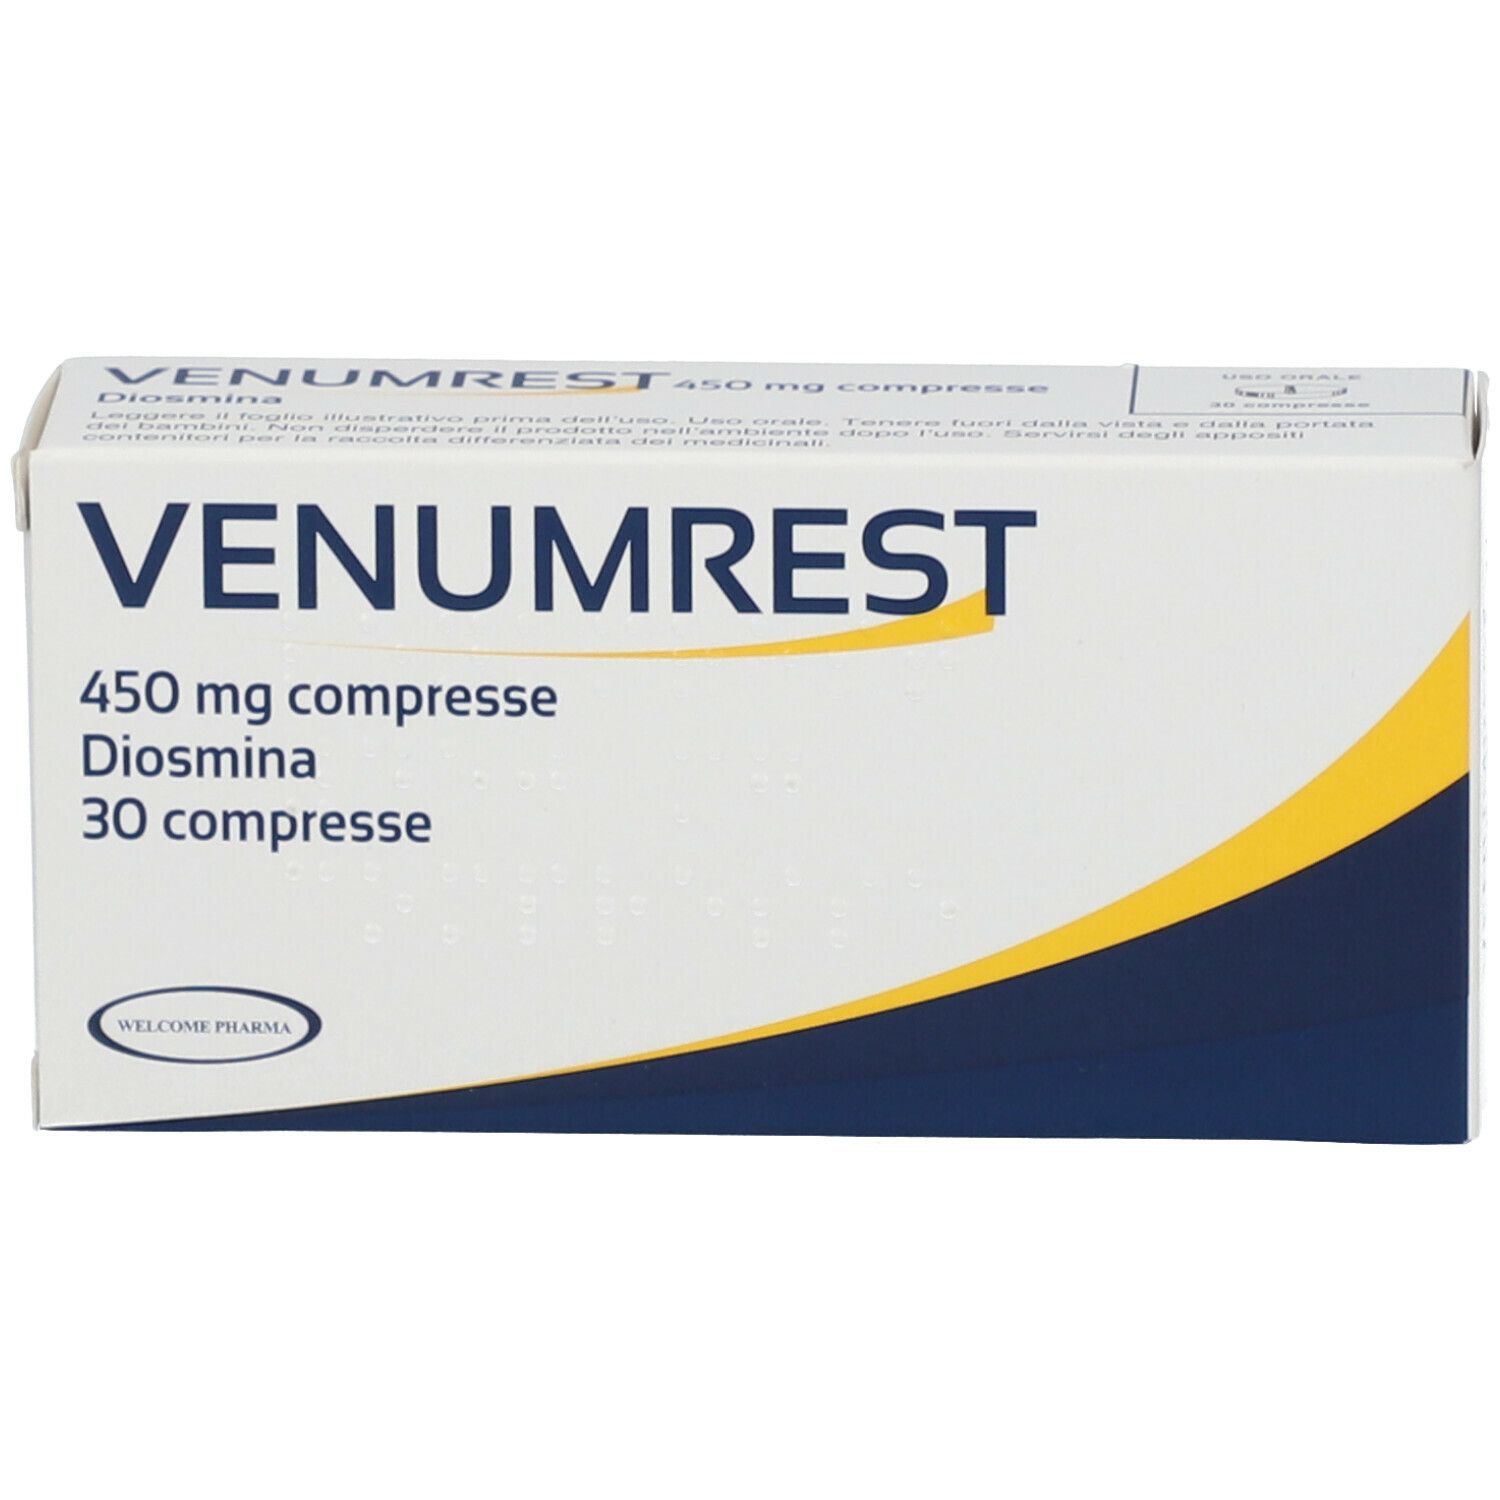 VENUMREST 450 mg